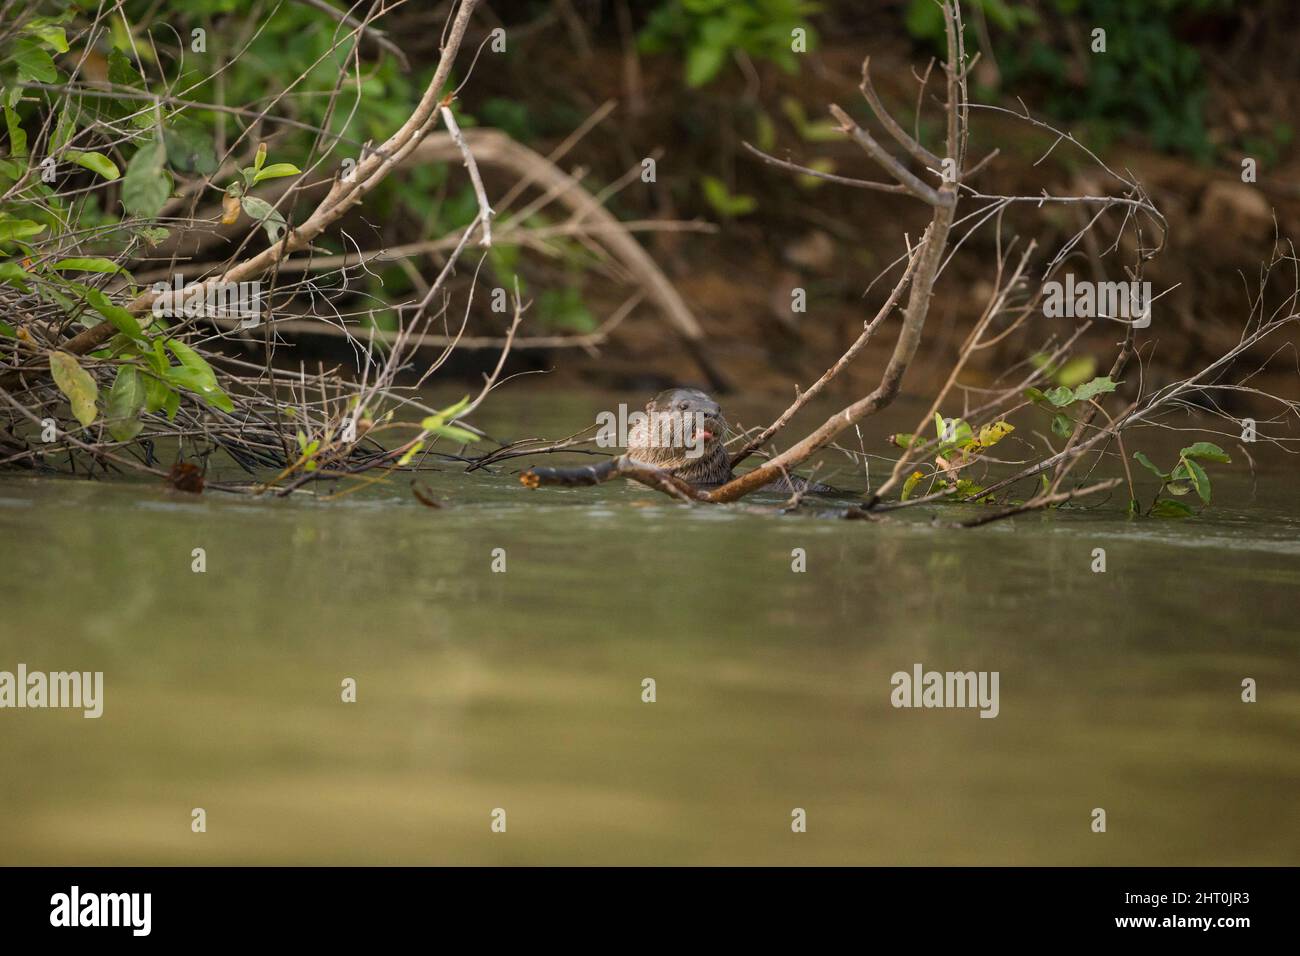 Lotter néotropical (Lontra longicaudis) par une rive de rivière. Pantanal, Mato Grosso, Brésil Banque D'Images